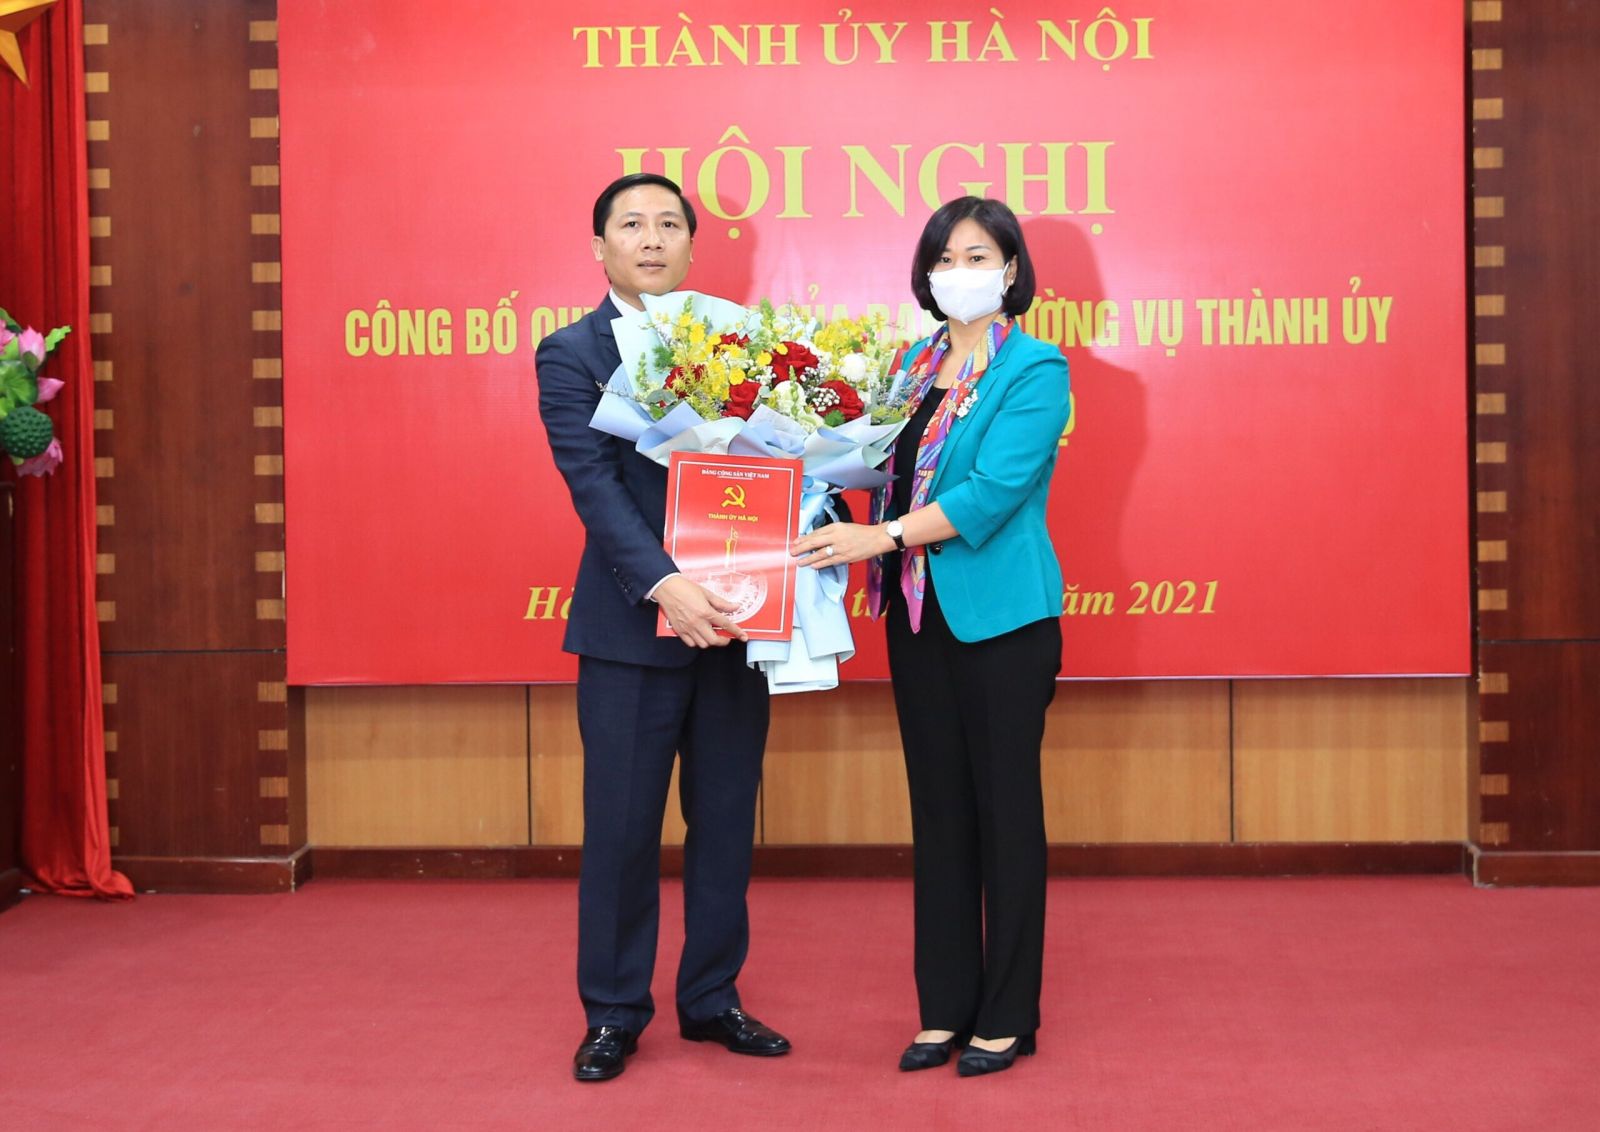 Bà Nguyễn Thị Tuyến - Phó Bí thư Thường trực Thành ủy Hà Nội trao quyết định cho ông Nguyễn Thanh Liêm